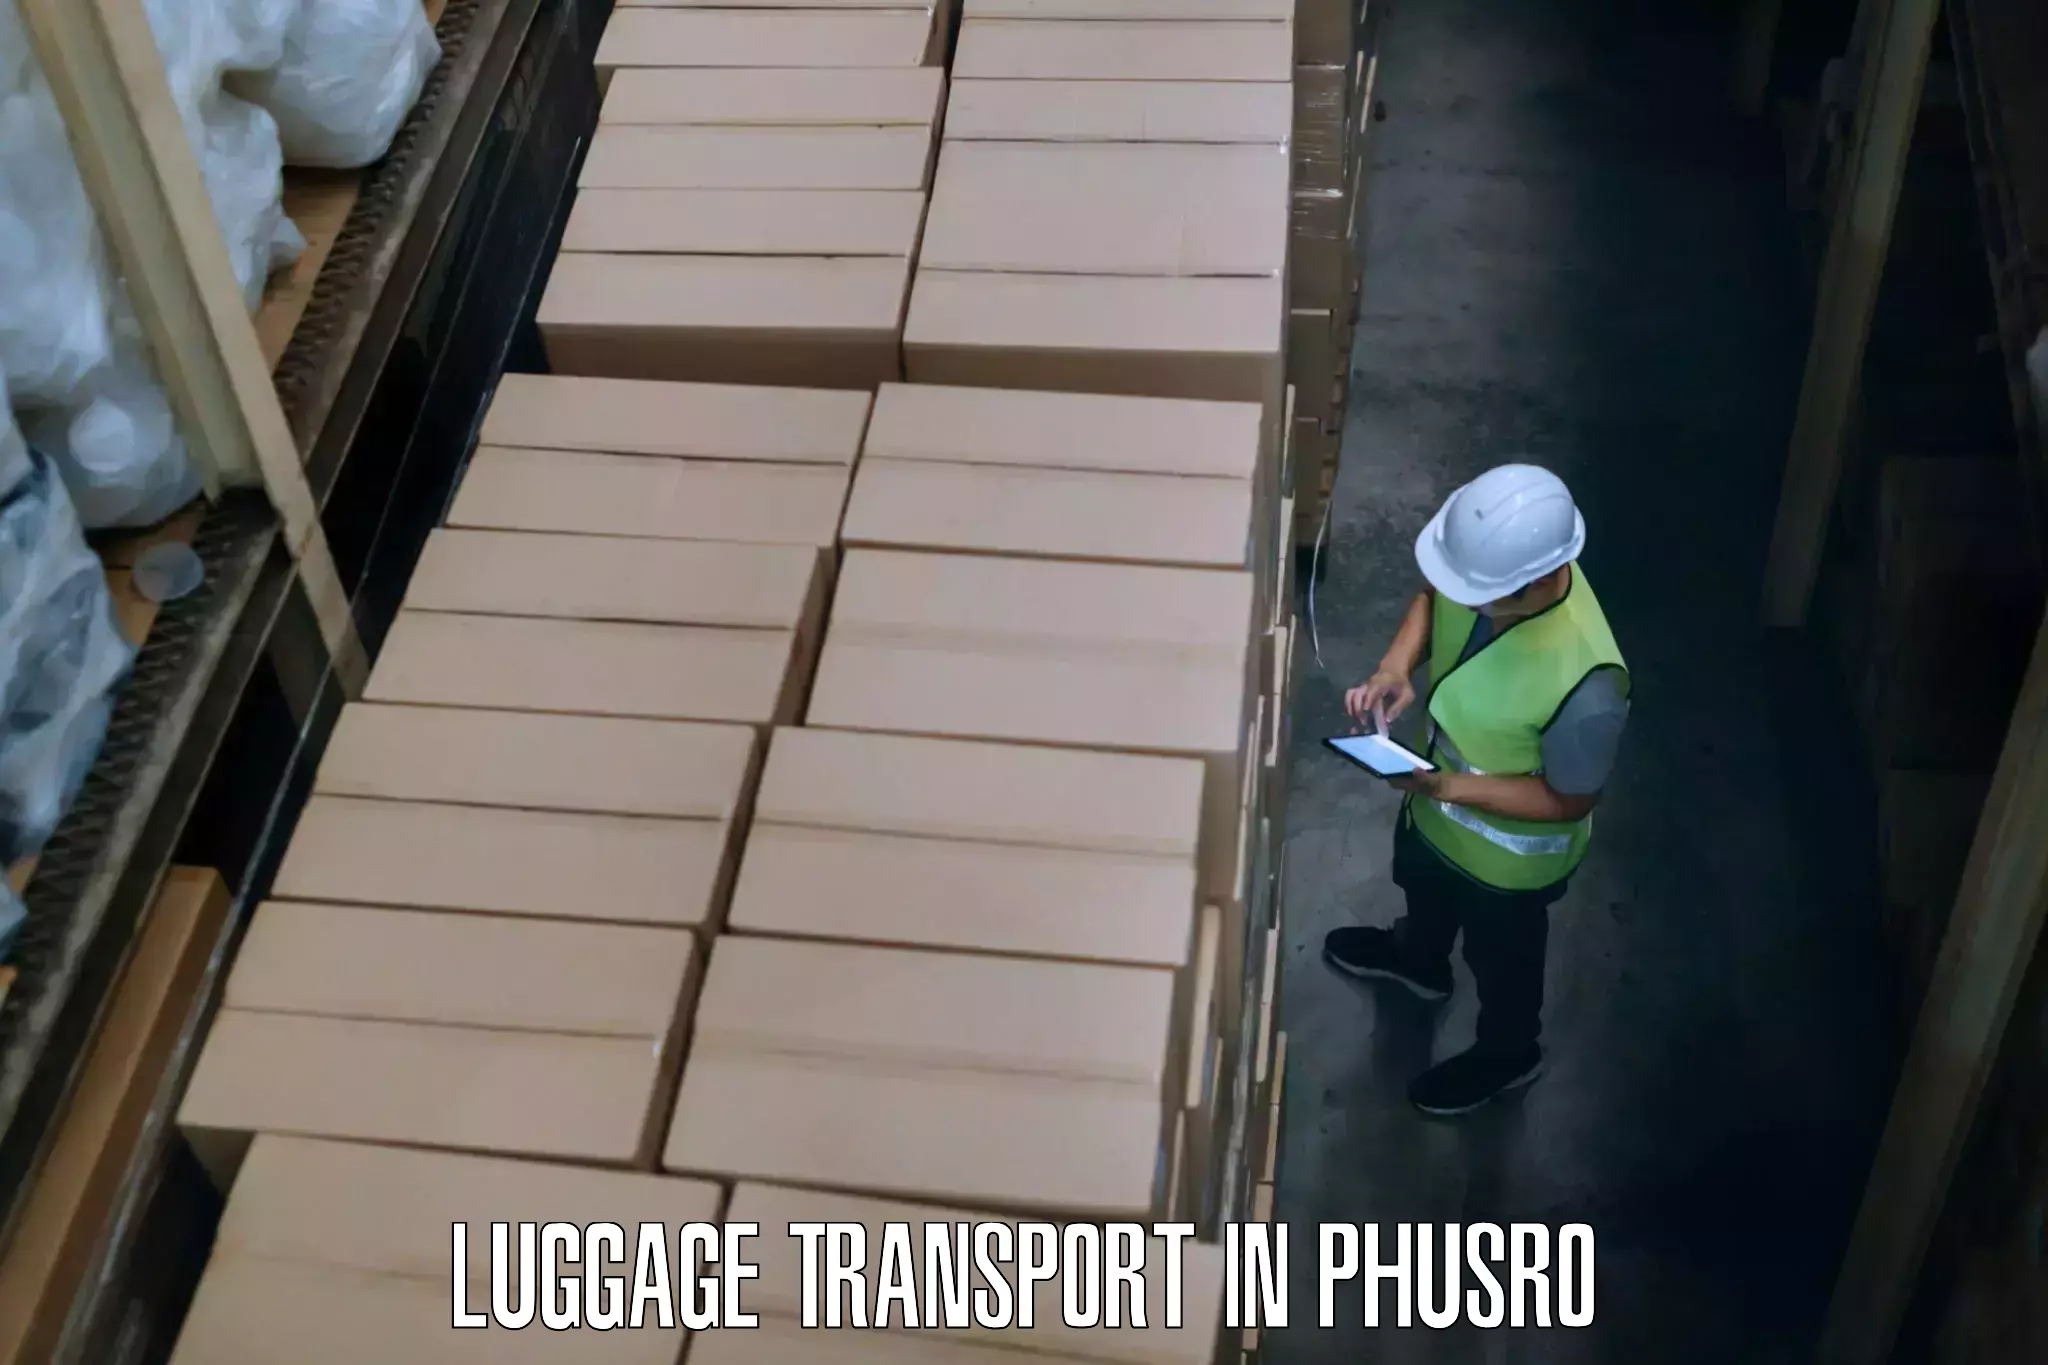 Luggage transit service in Phusro